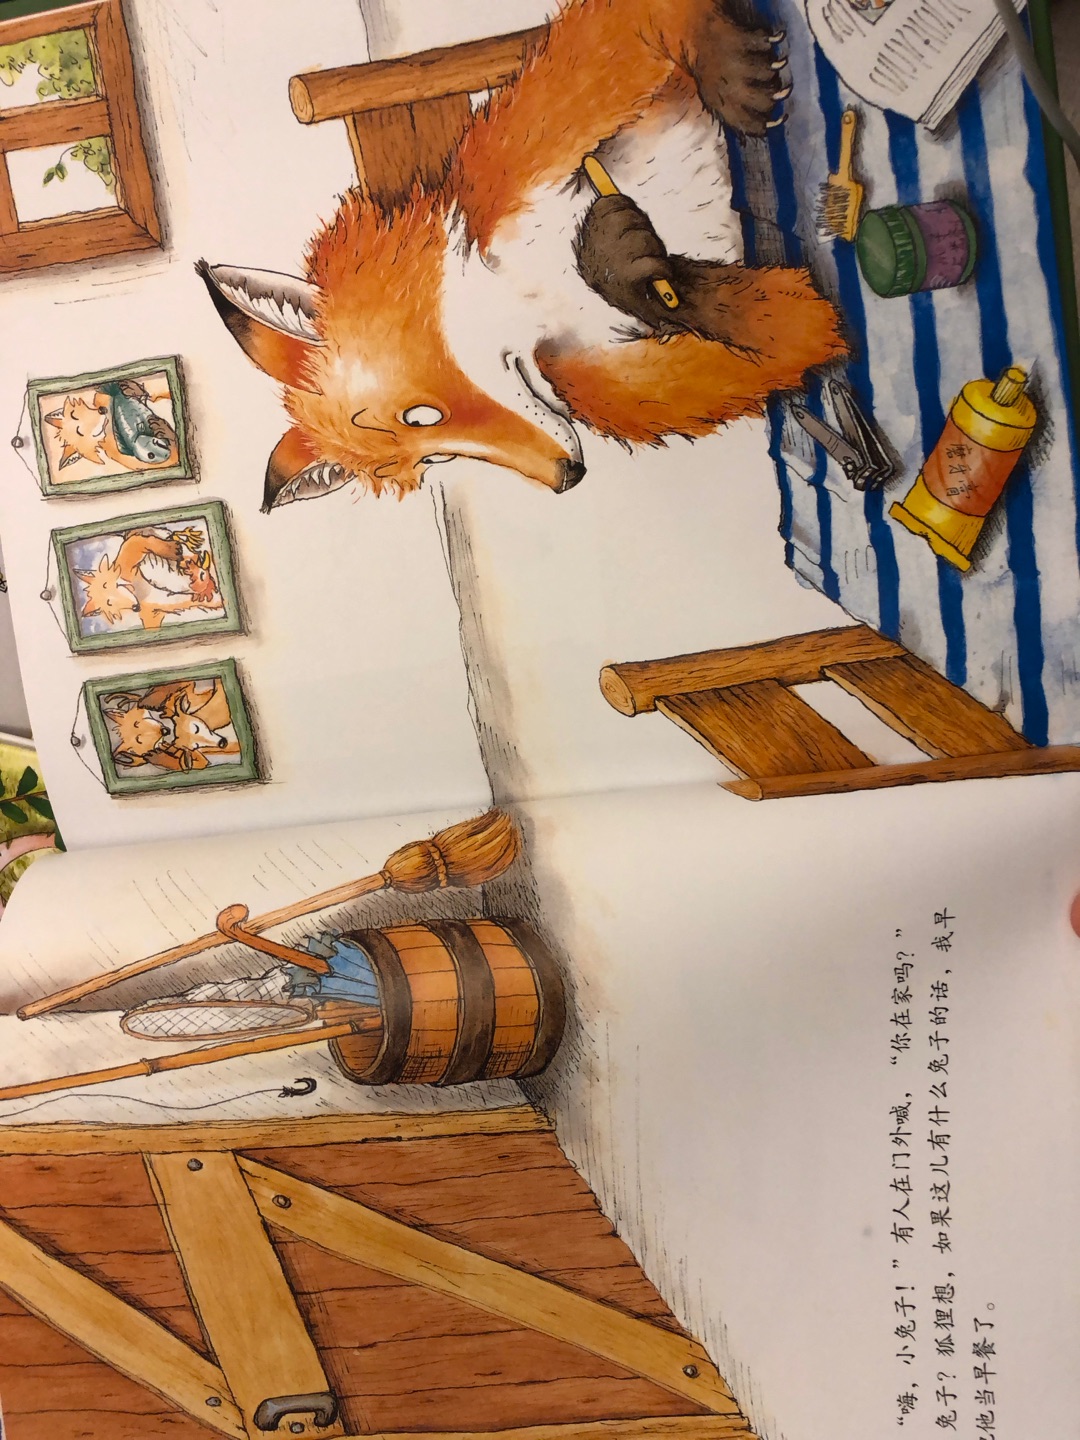 有点像你千万别上当啊，那本书。都是被吃的小动物耍了狐狸。